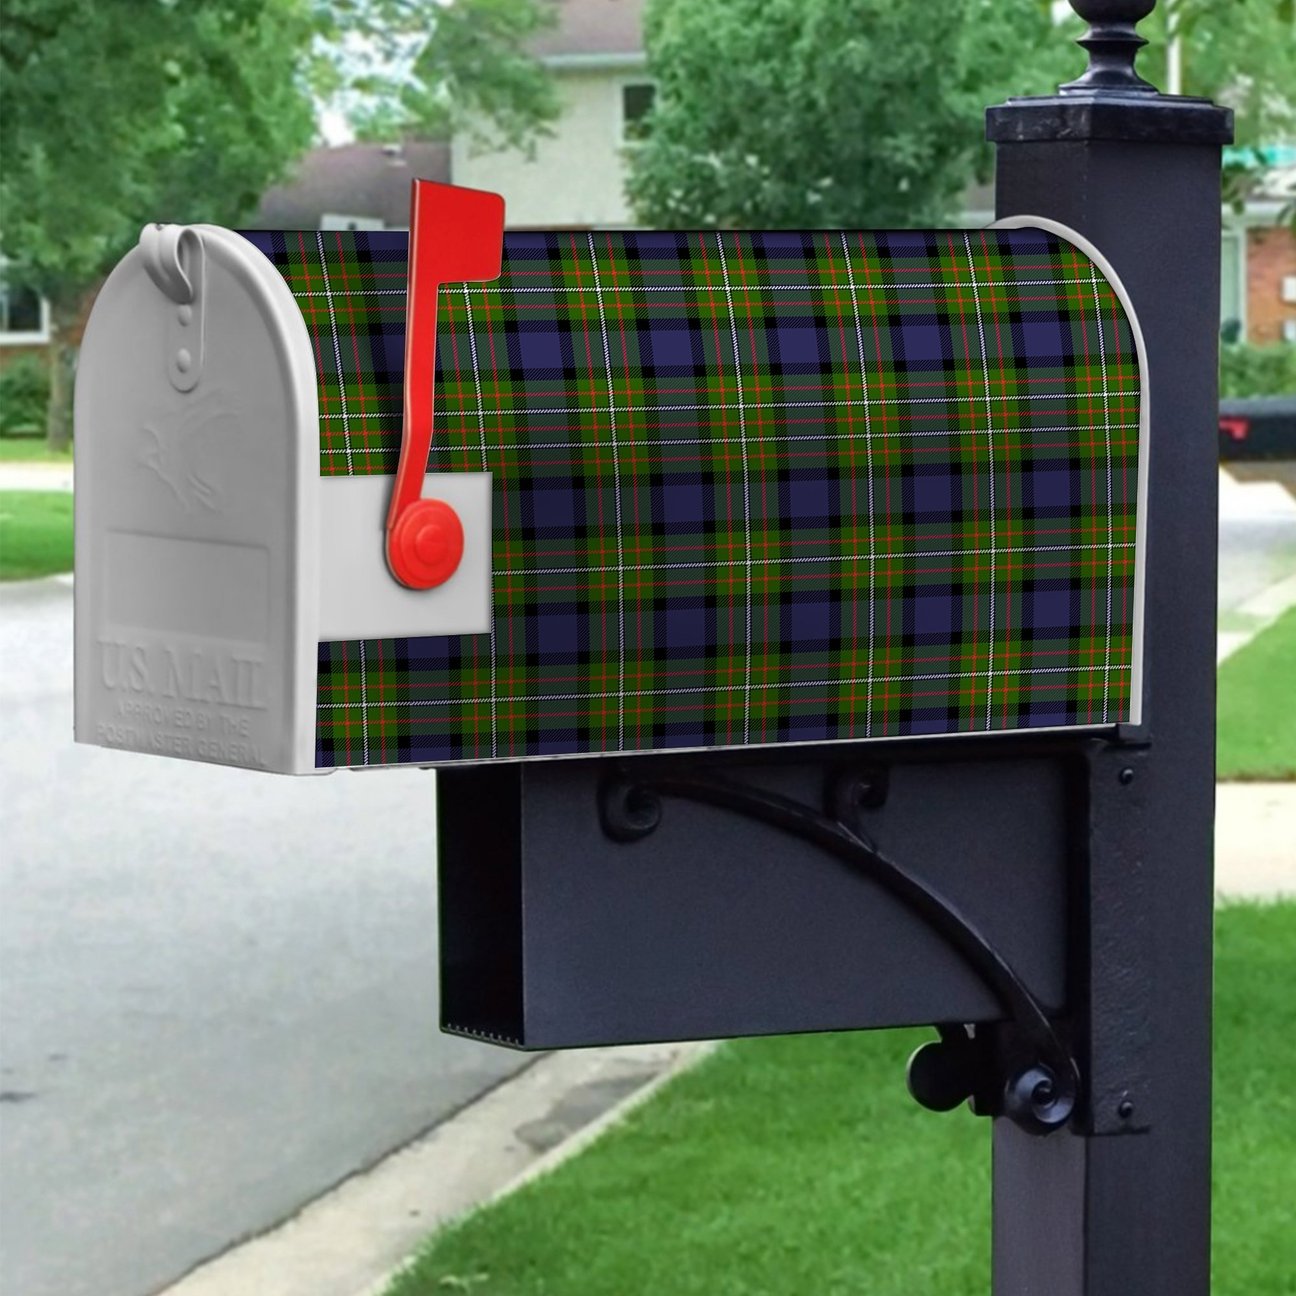 Fergusson Modern Tartan Crest Mailbox